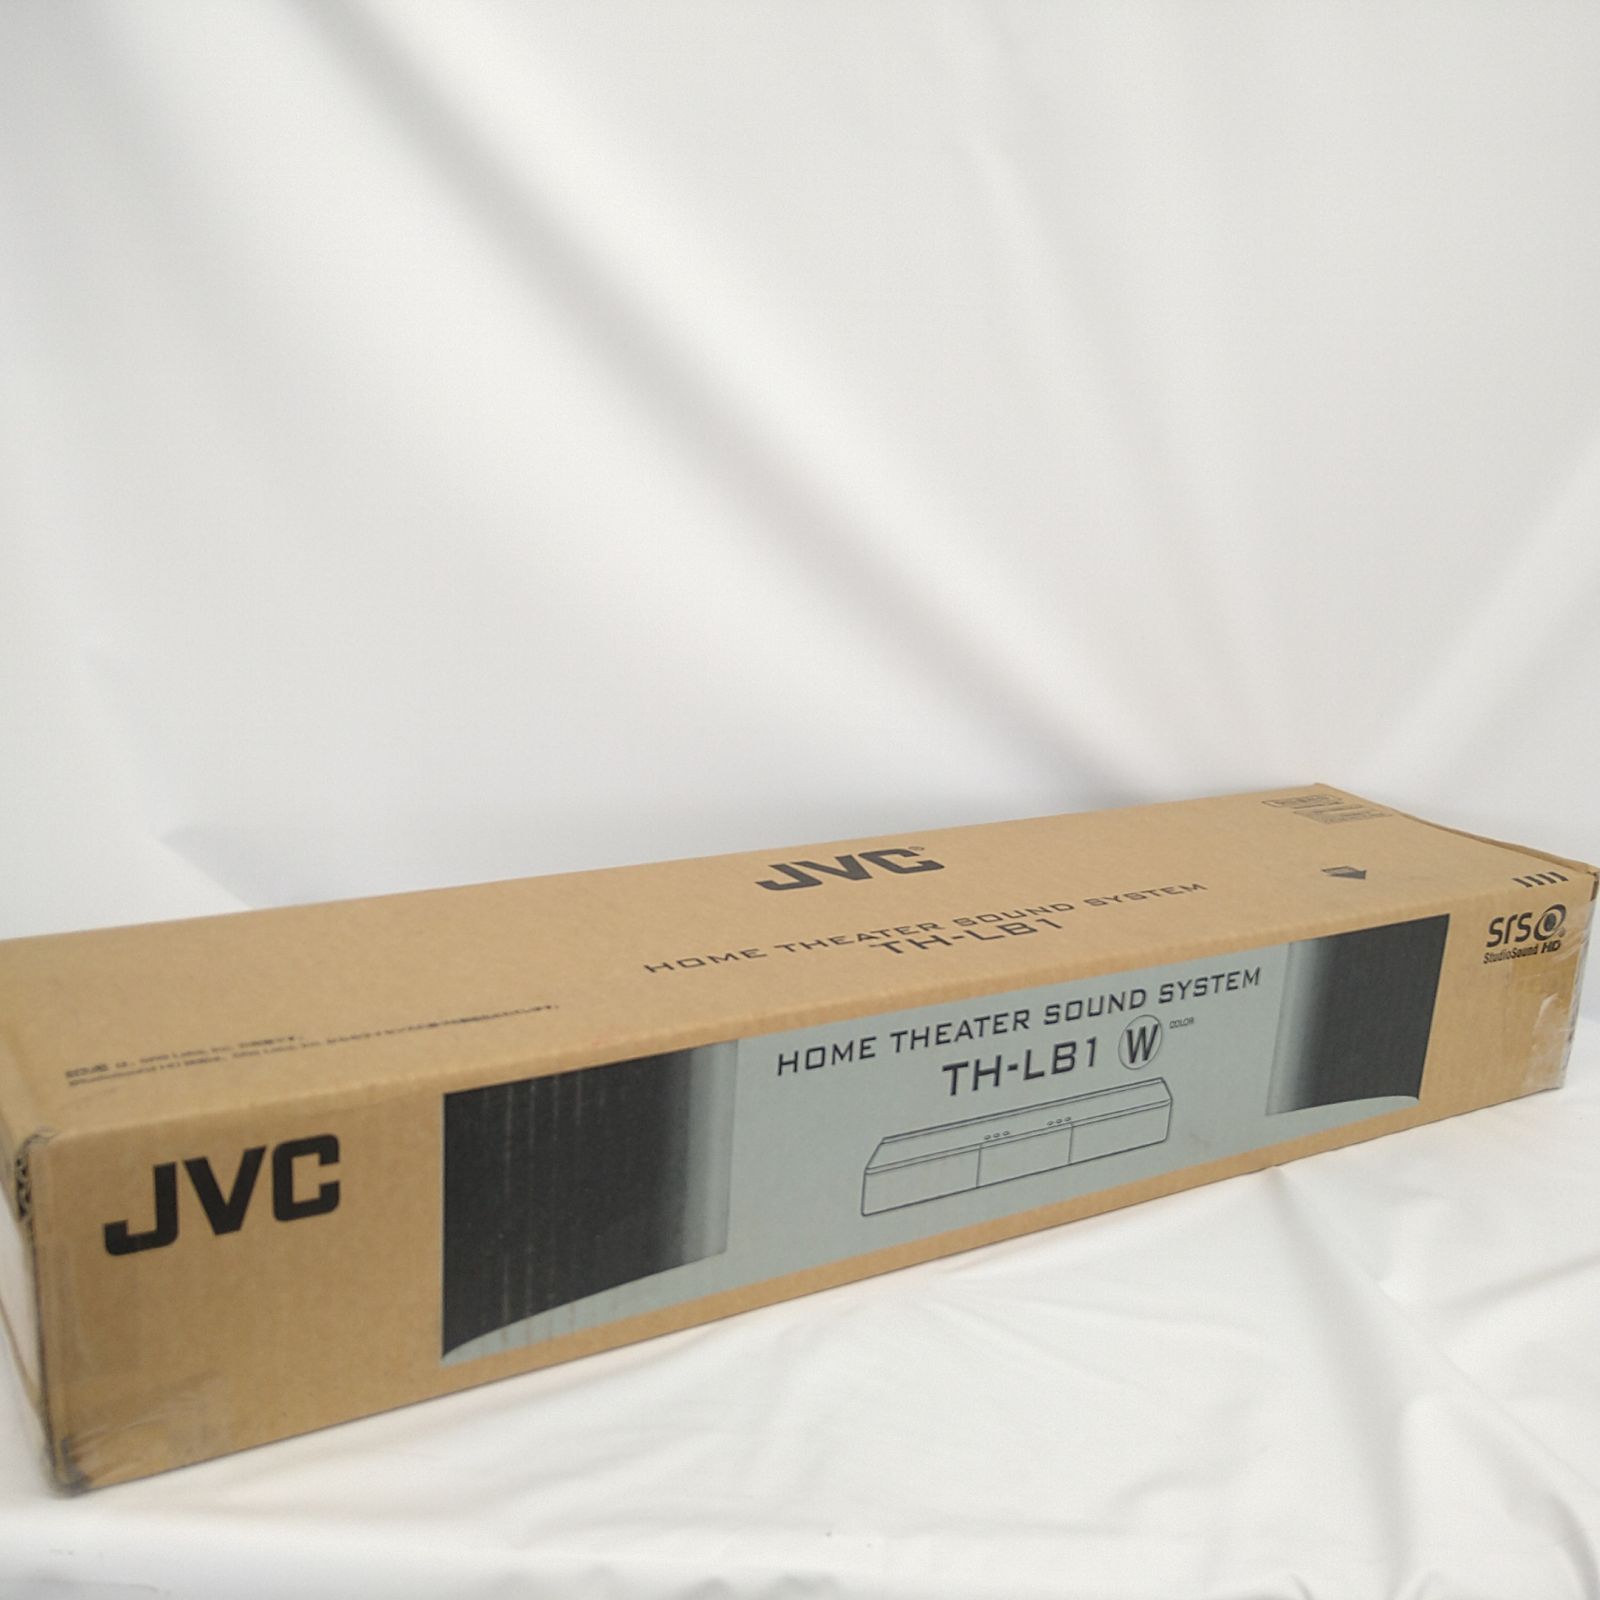 JVC ホームシアターサウンドシステム - スピーカー